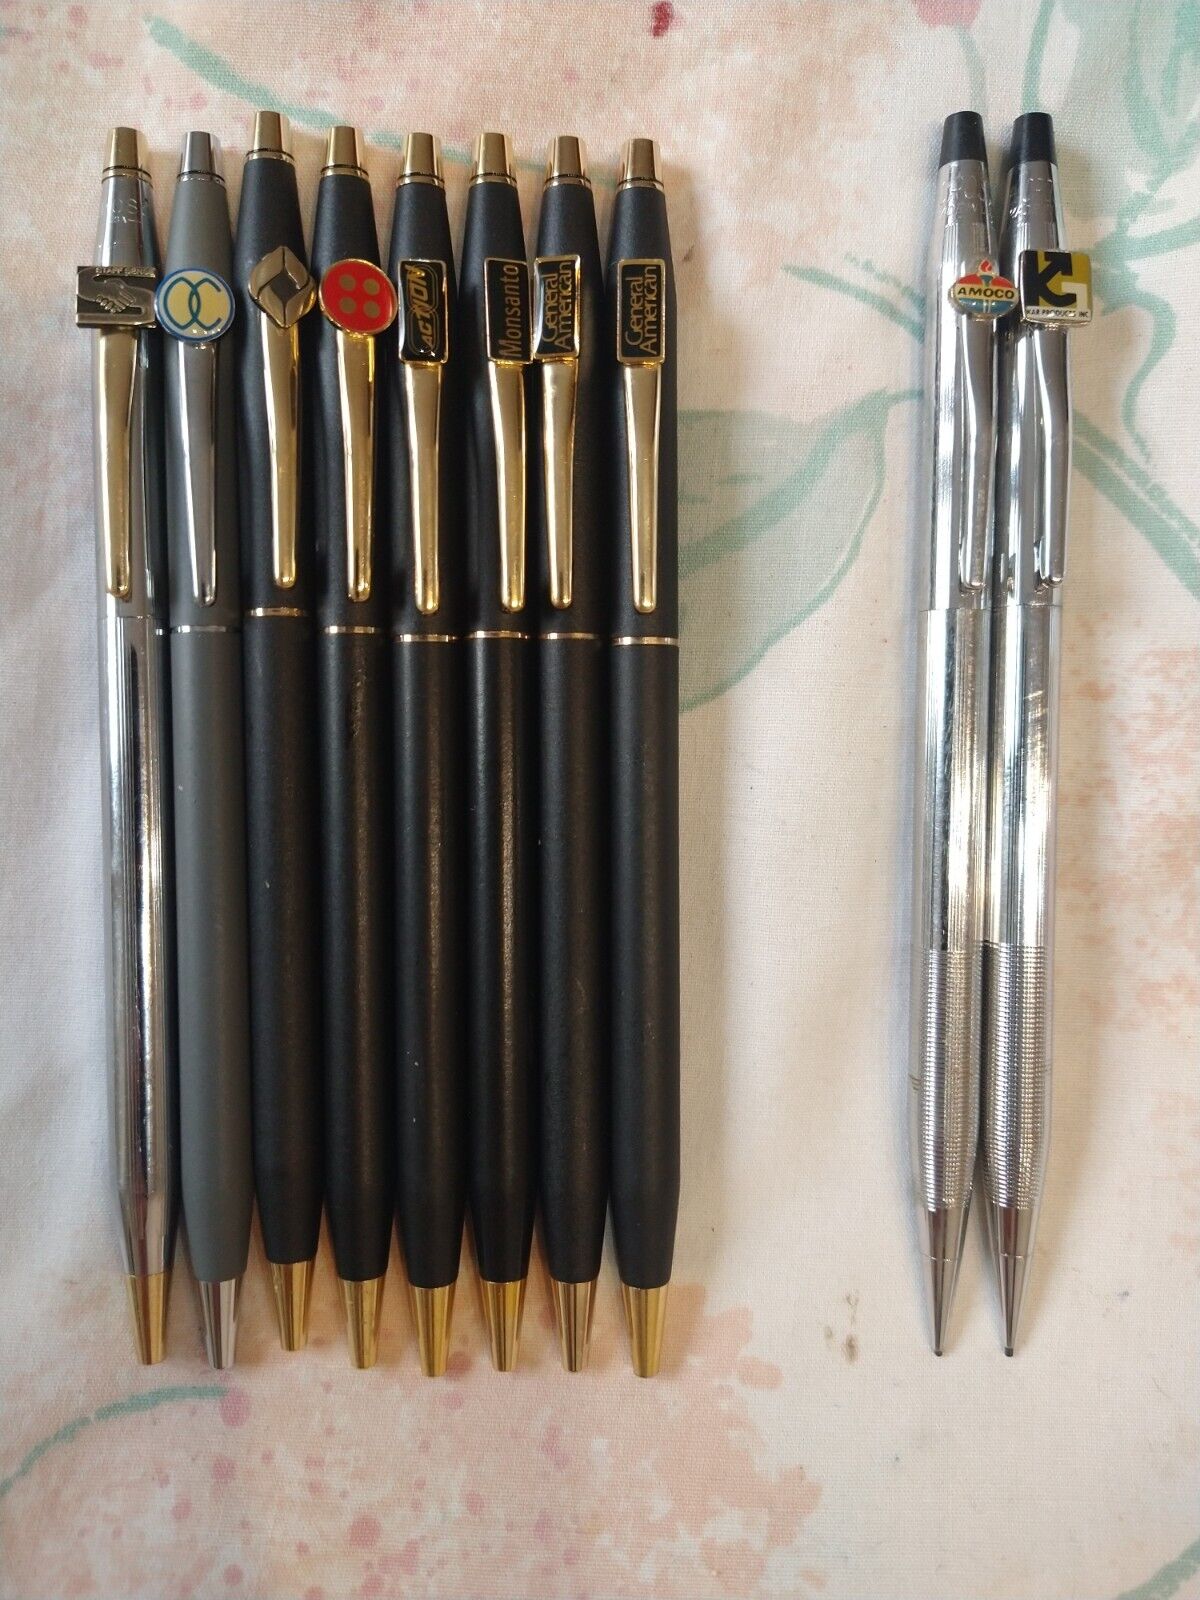 Cross Lot Of 10 Cross 8 Ball Point Pens & 2 Pencils 0.9MM USA Made